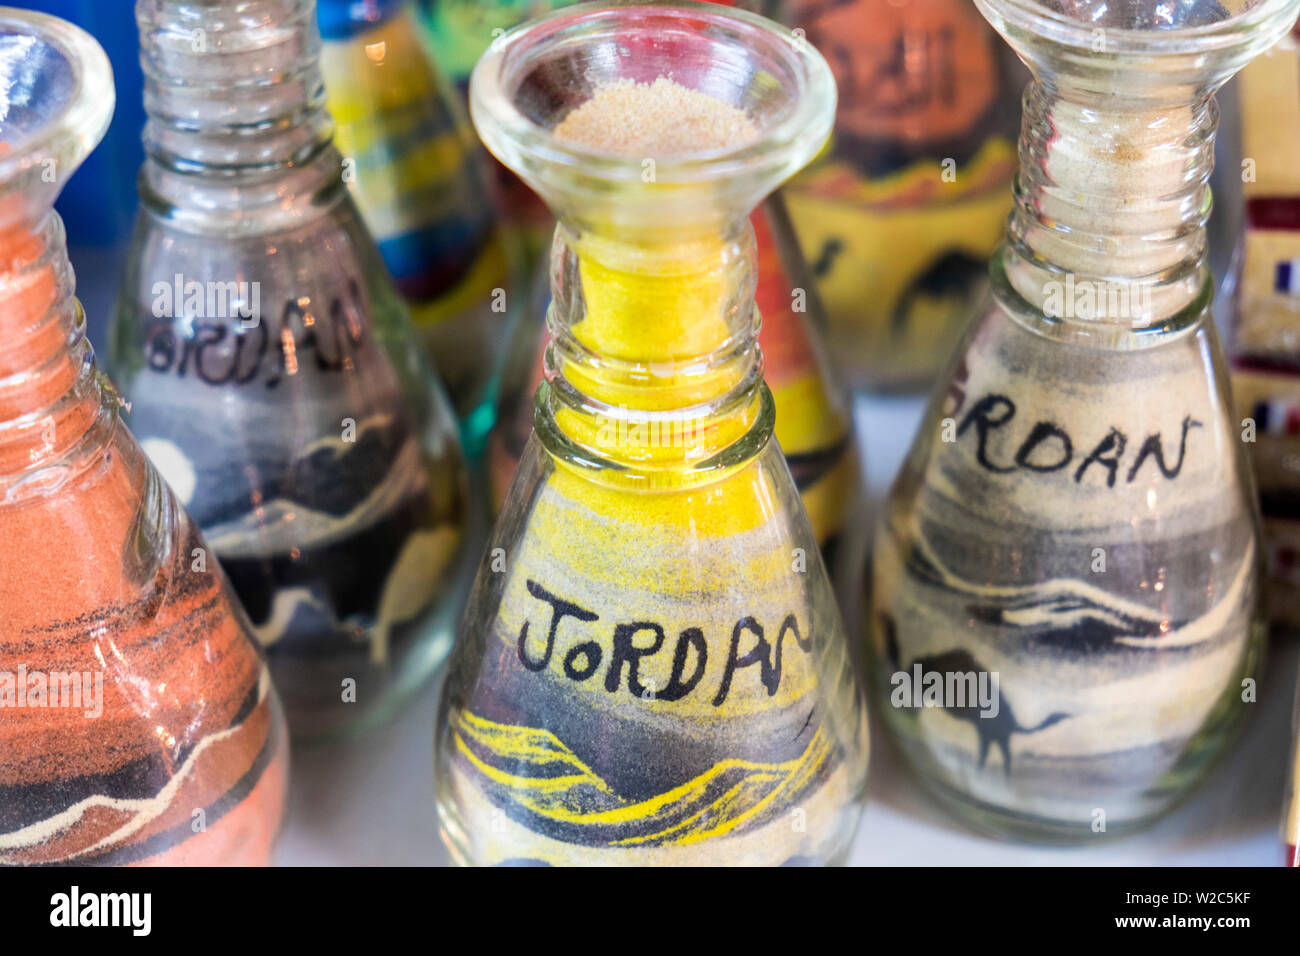 Jordania arena arte en botellas, Jordania Foto de stock